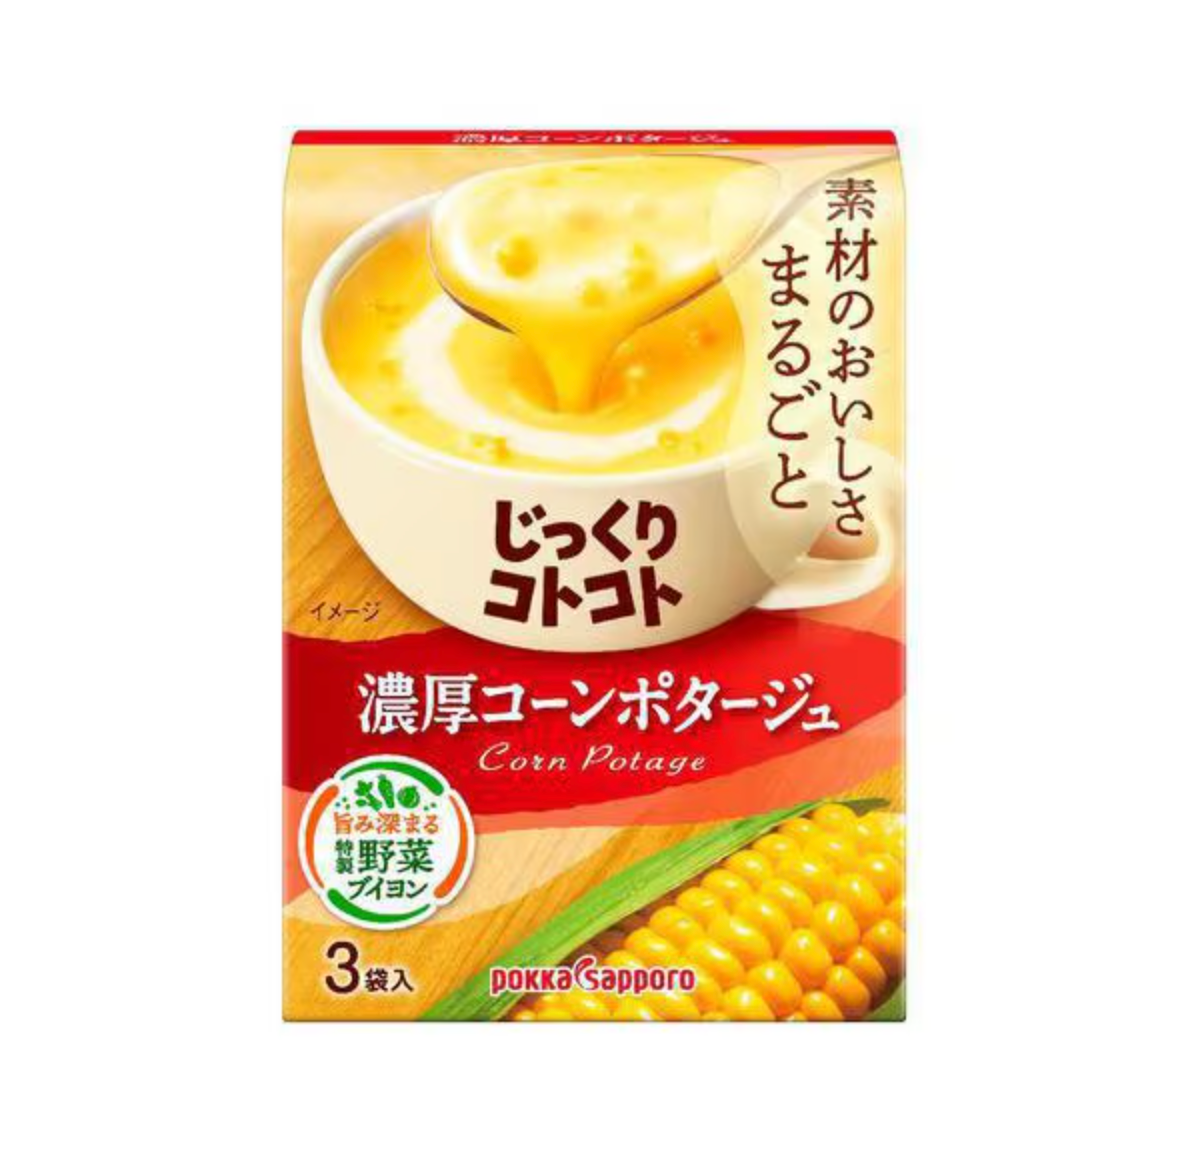 Pokka Sapporo Soup: Rich Corn Potage